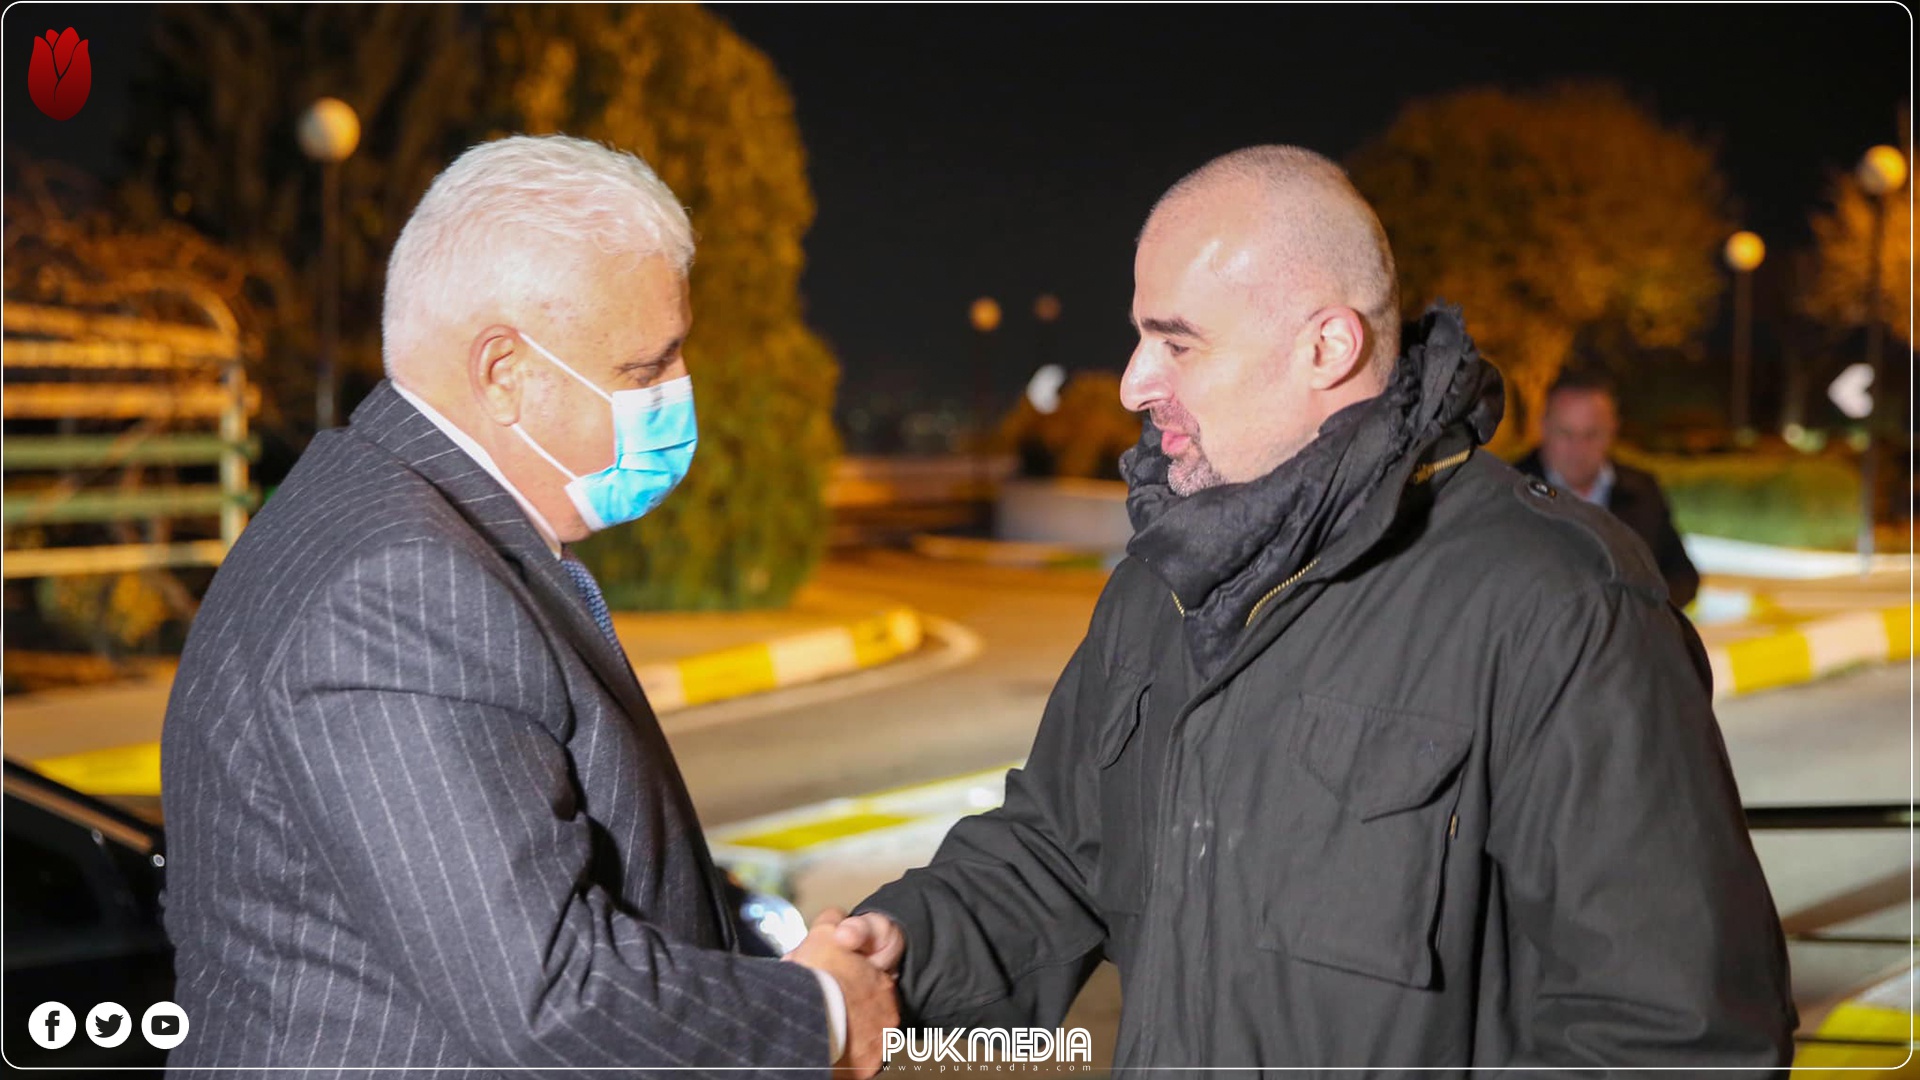 تاکید رئیس مشترک اتحادیه میهنی و رئیس سازمان حشدالشعبی بر تشکیل دولتی پاسخگو در عراق